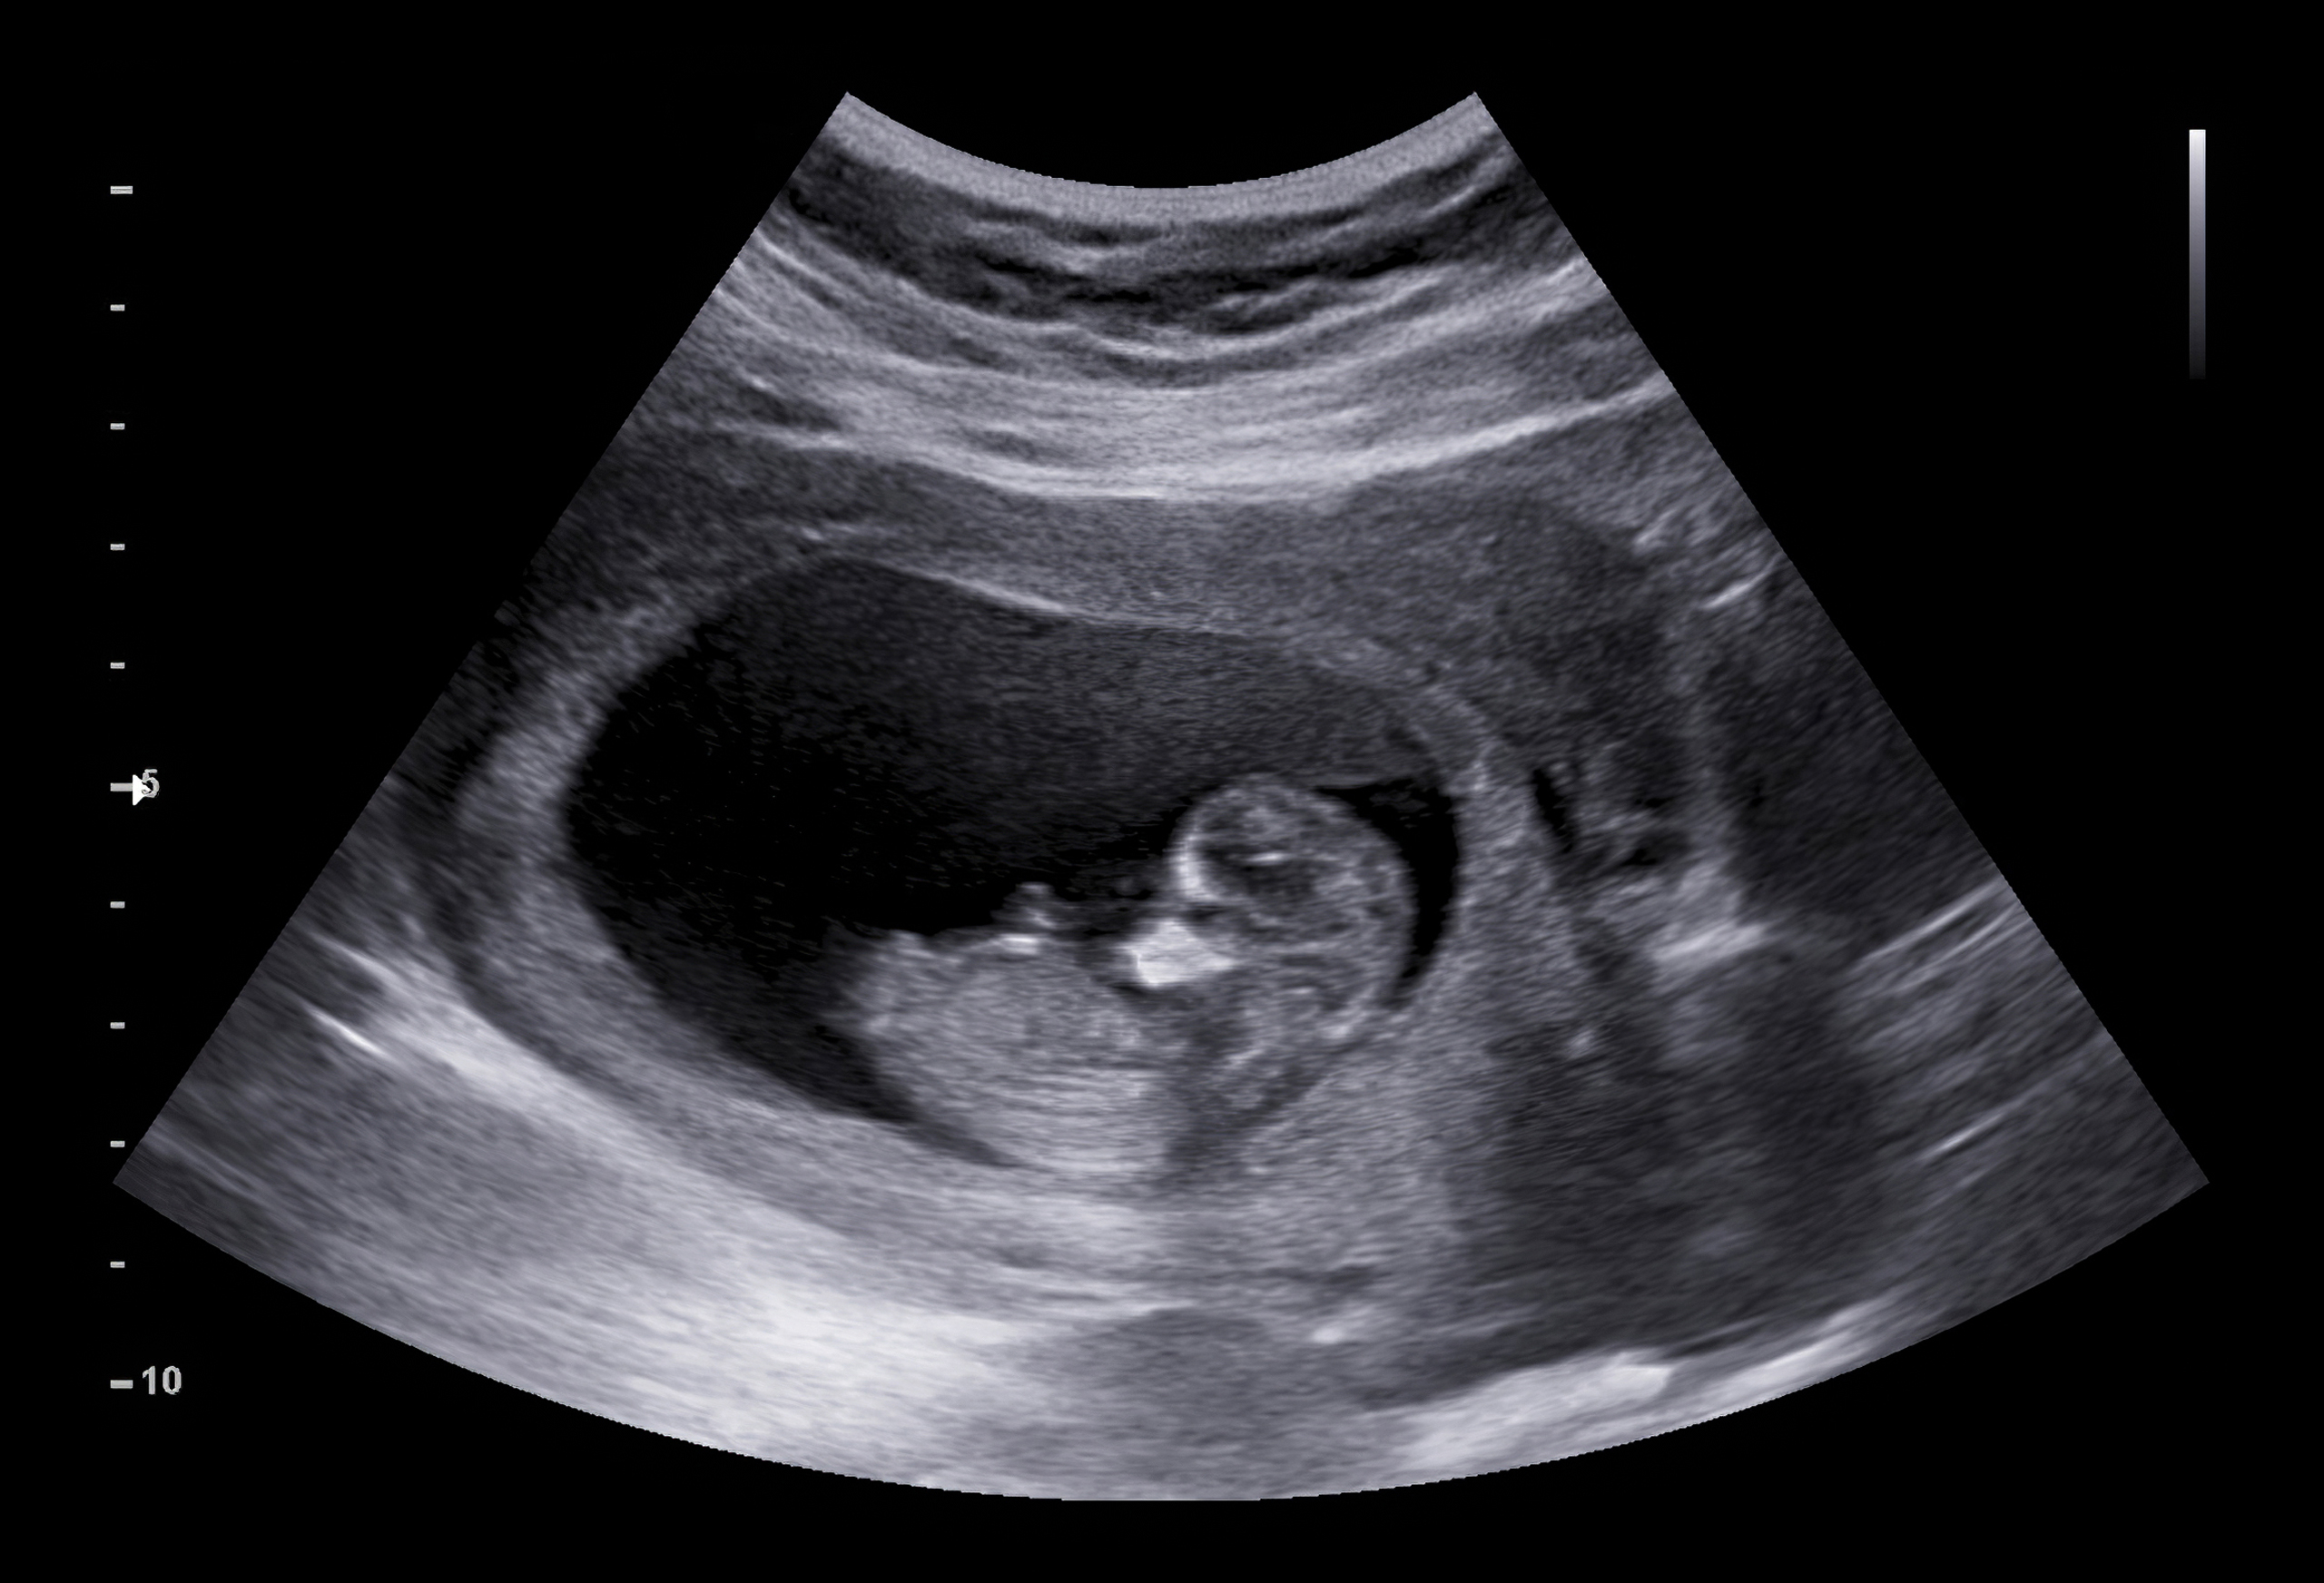 An ultrasound | Shutterstock